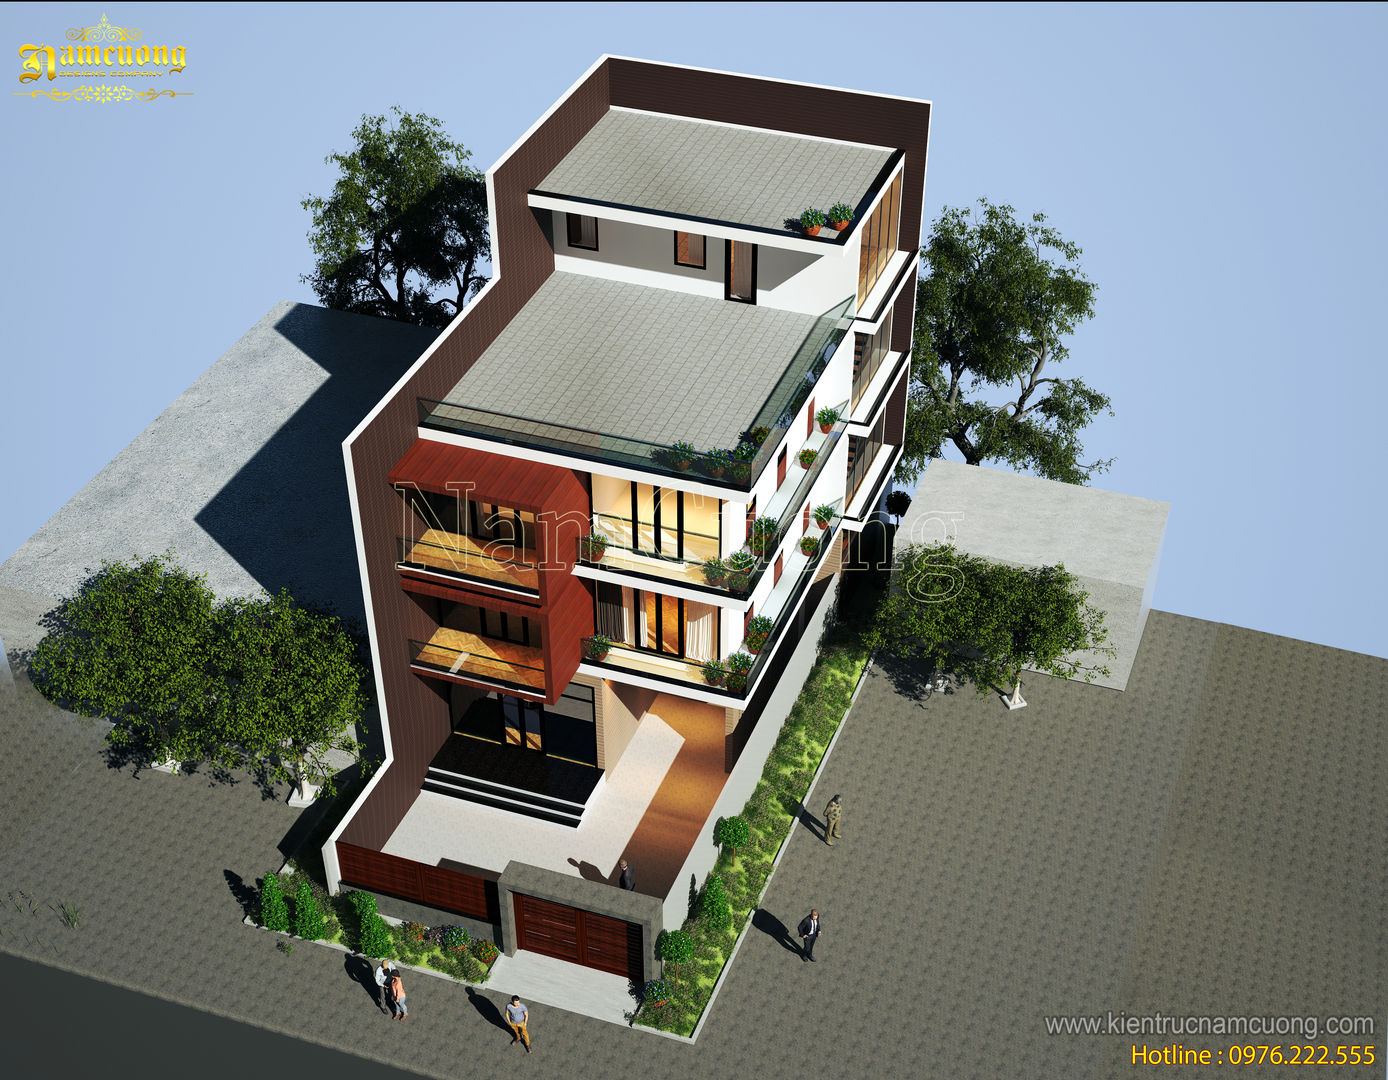 NamCuong design company, Công ty Cổ phần tư vấn thiết kế xây dựng Nam Cường Công ty Cổ phần tư vấn thiết kế xây dựng Nam Cường Nhà